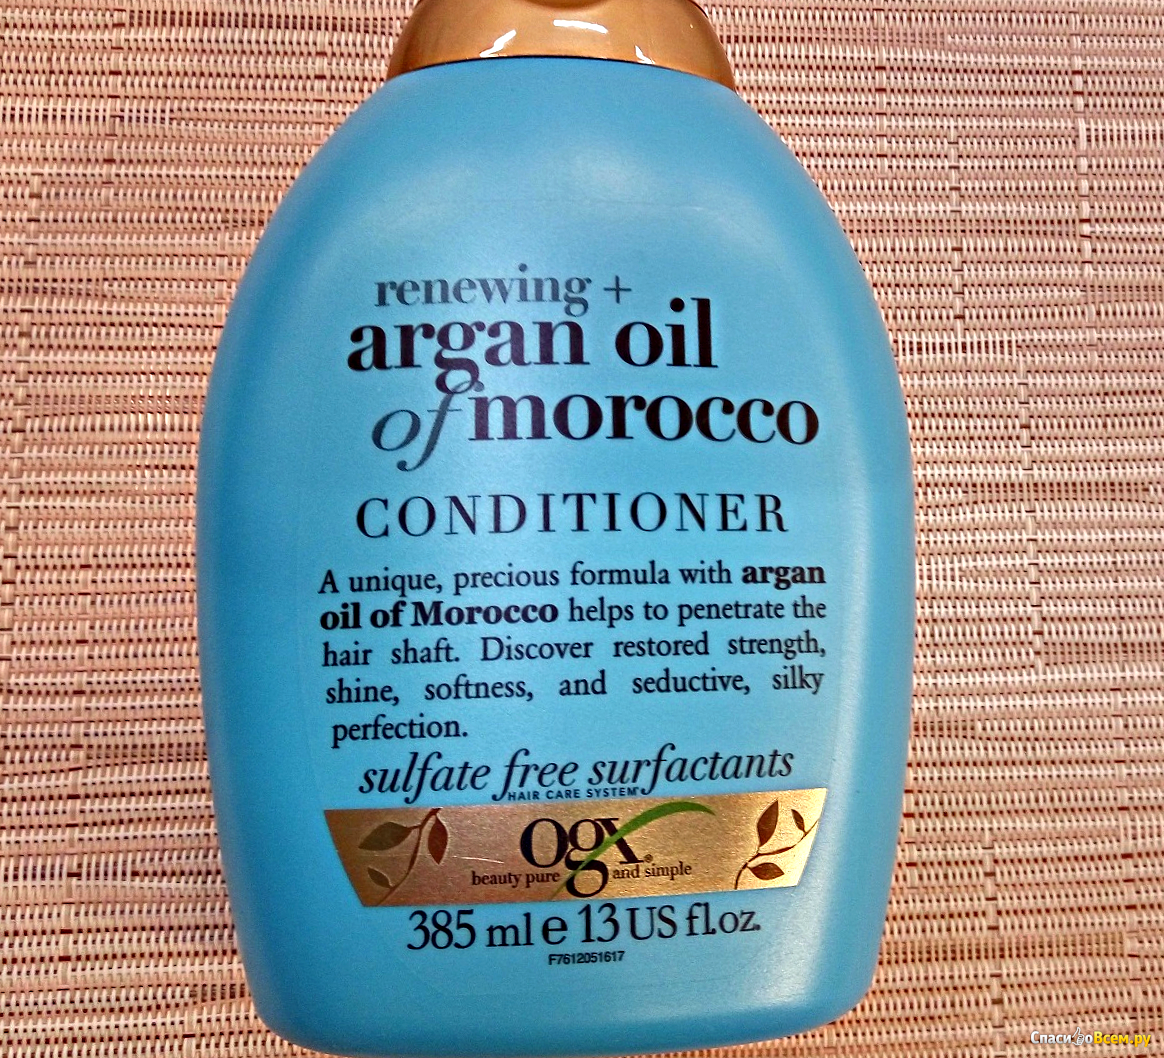 Кондиционер для волос joanna argan oil с аргановым маслом